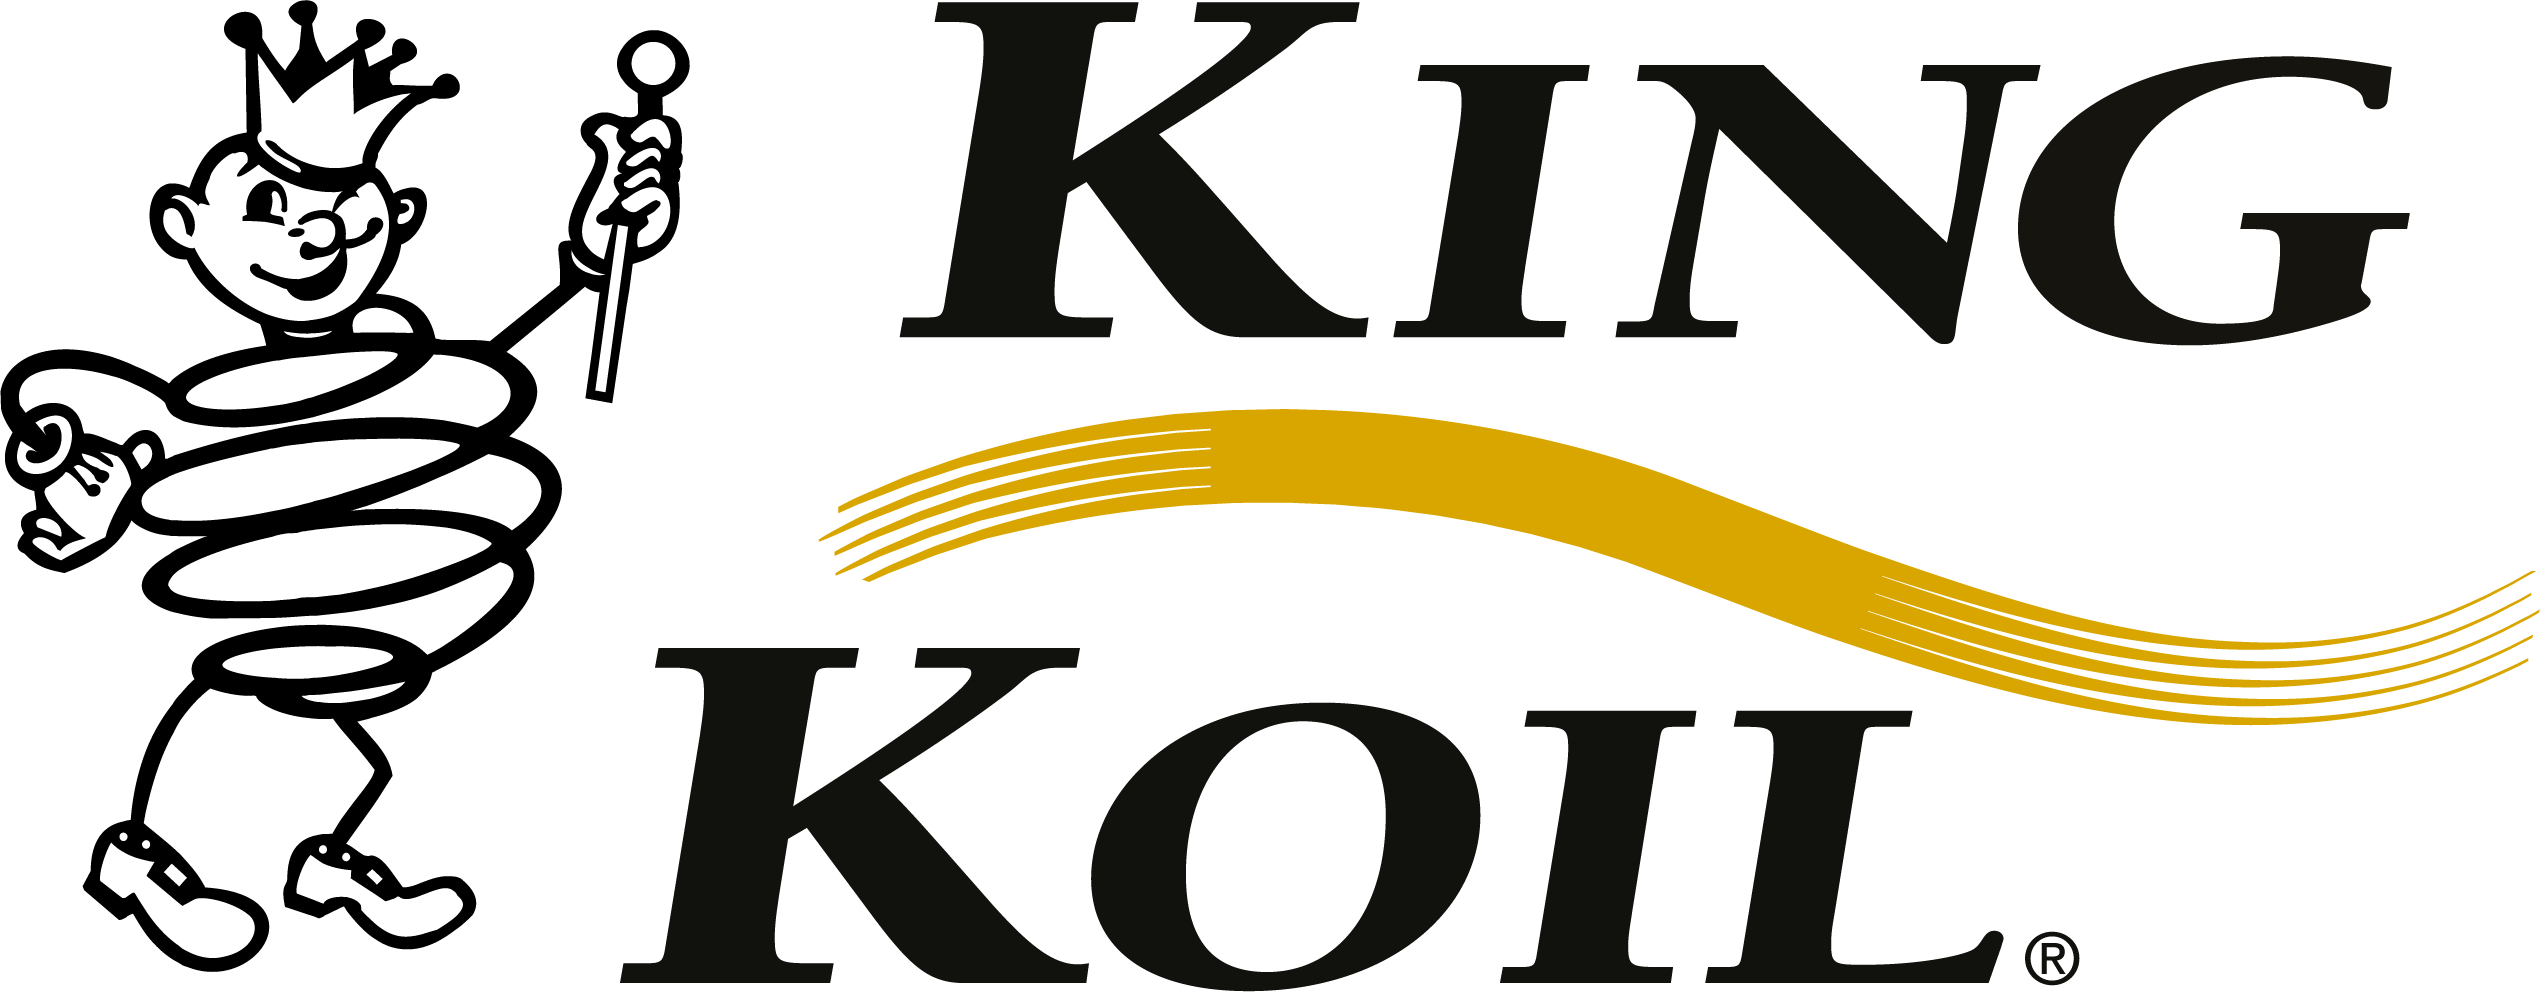 KingKoil eStore